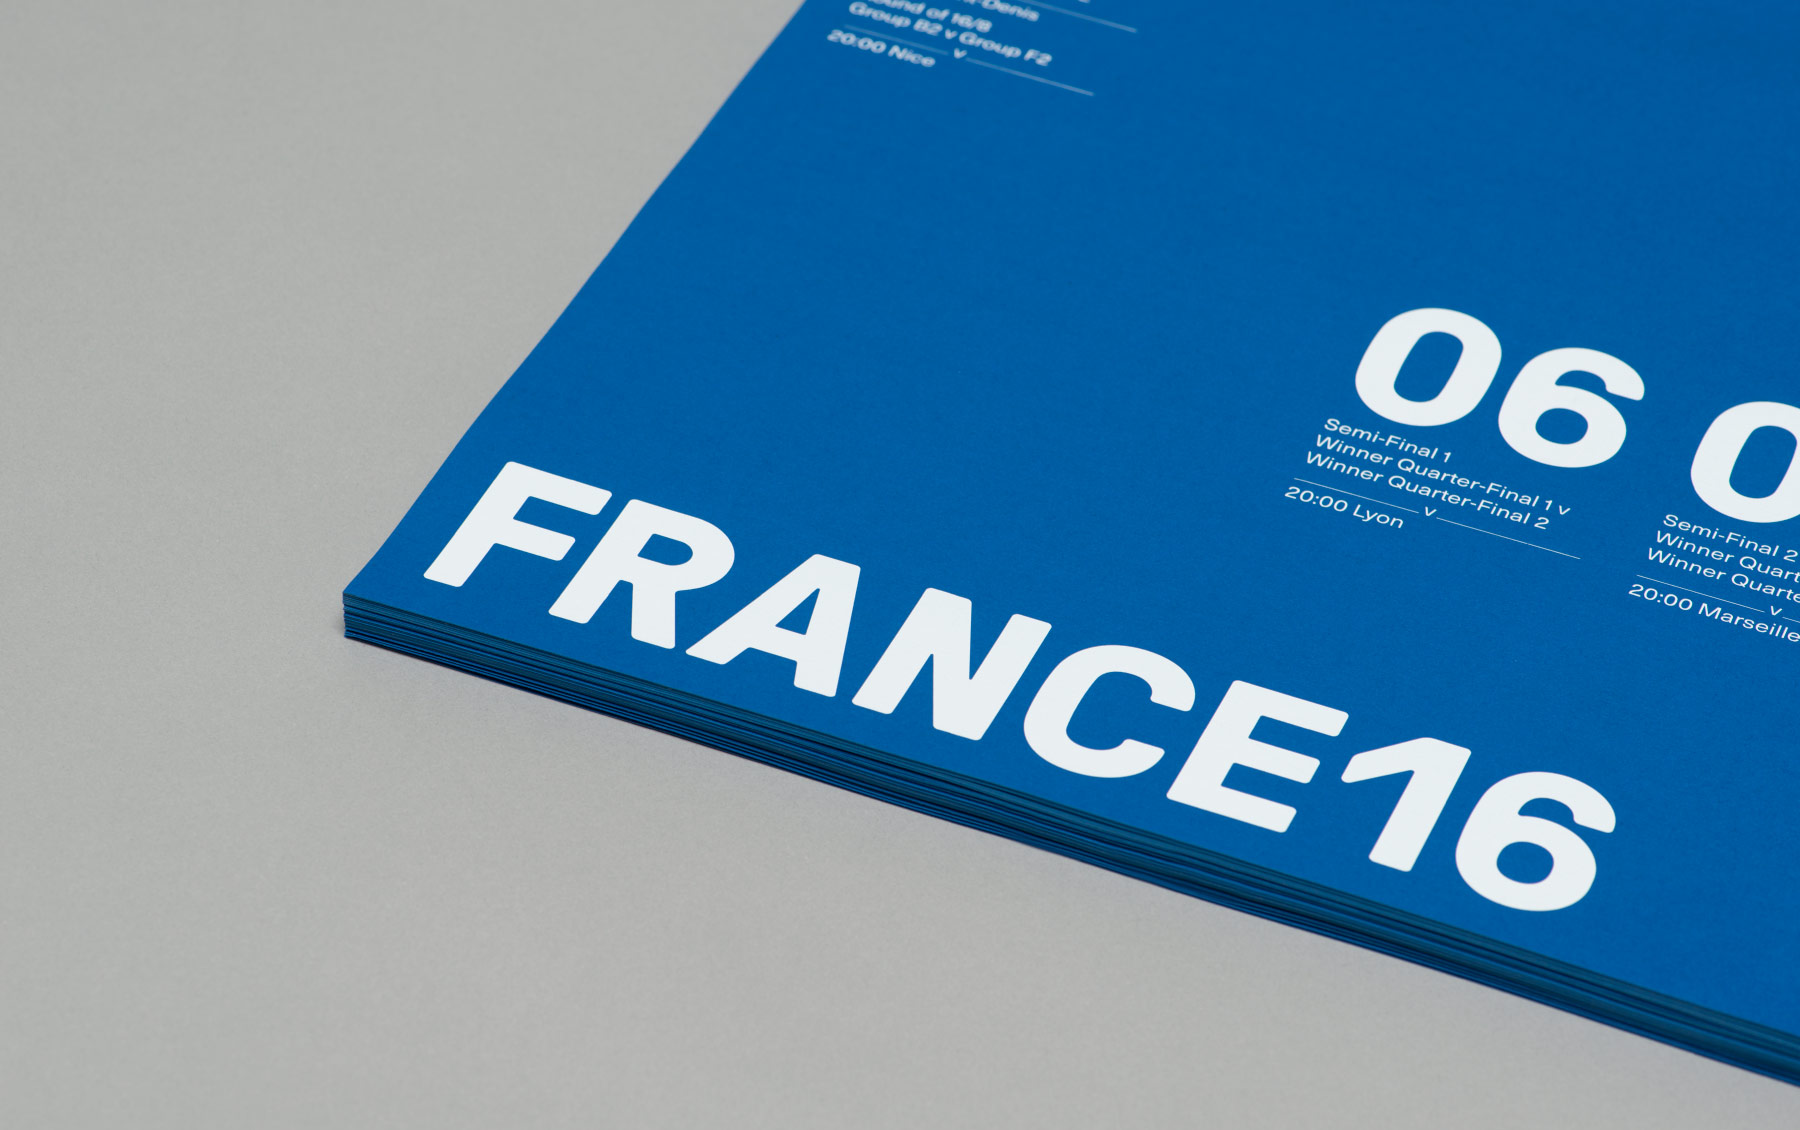 France16 – Designed by Karoshi